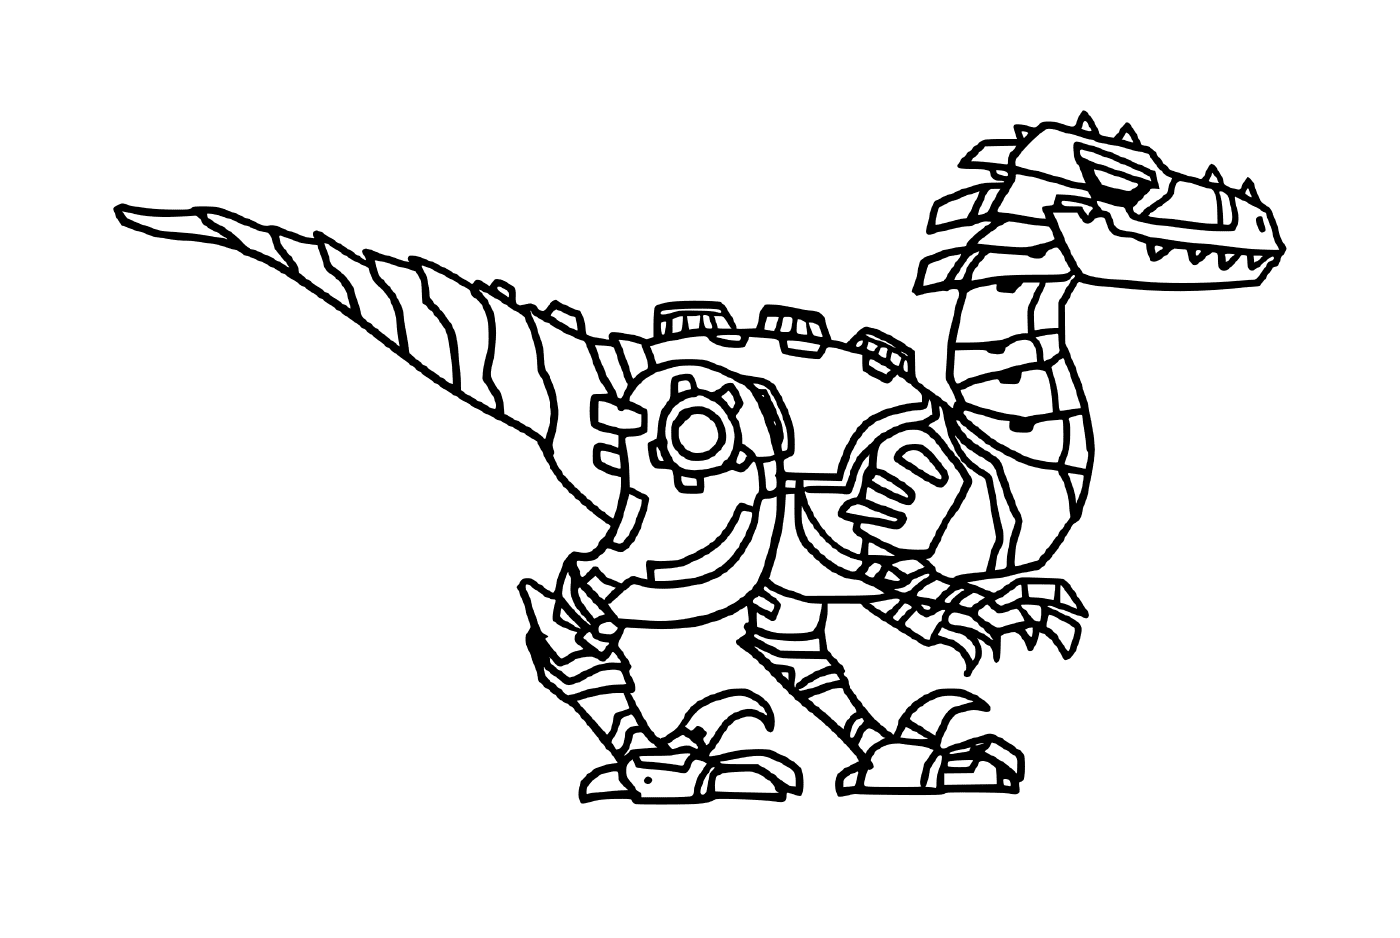  Тиранозавр, динозавр-робот 